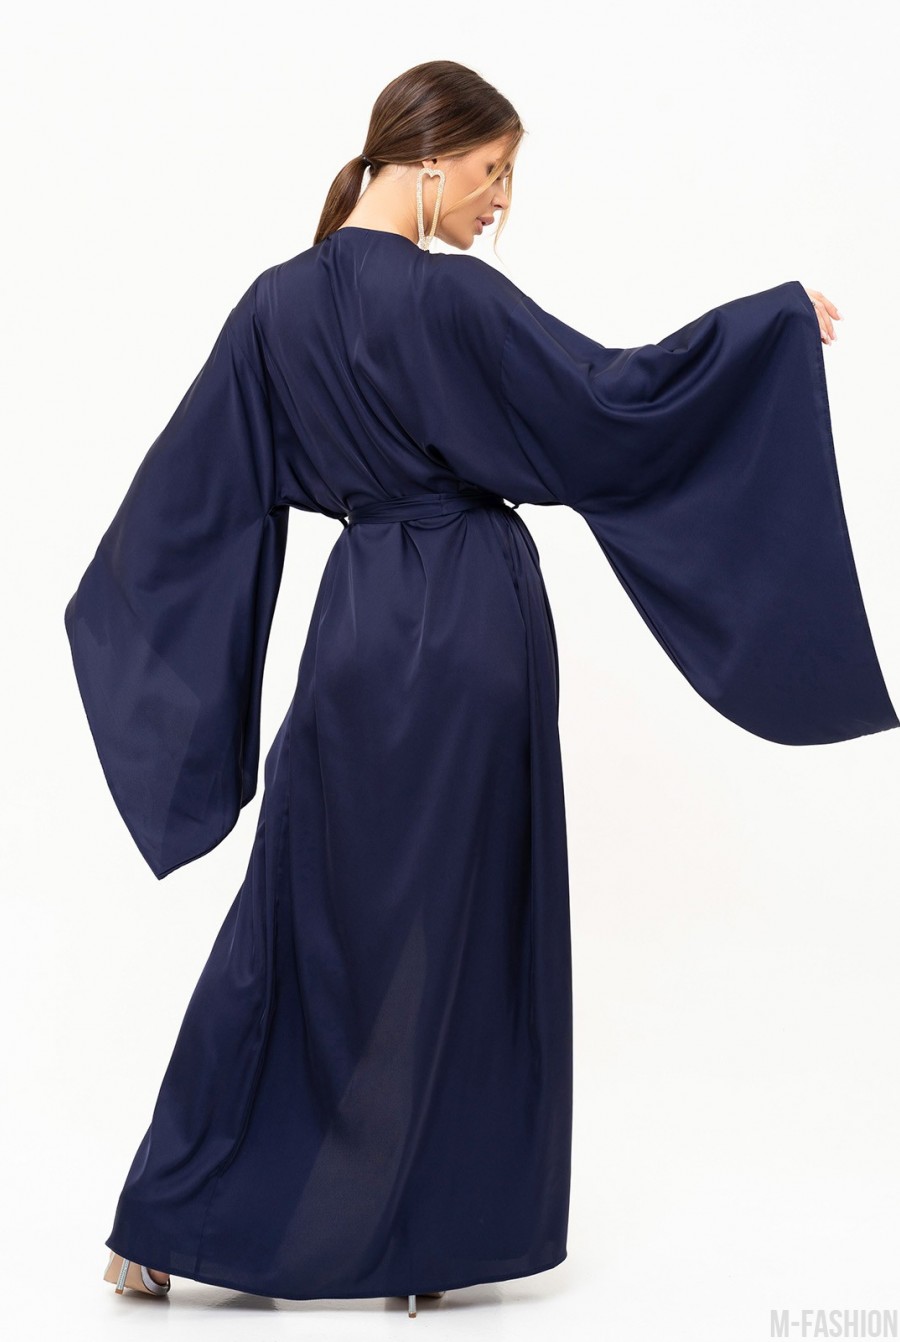 Темно-синее шелковое длинное платье-халат на запах - Фото 4